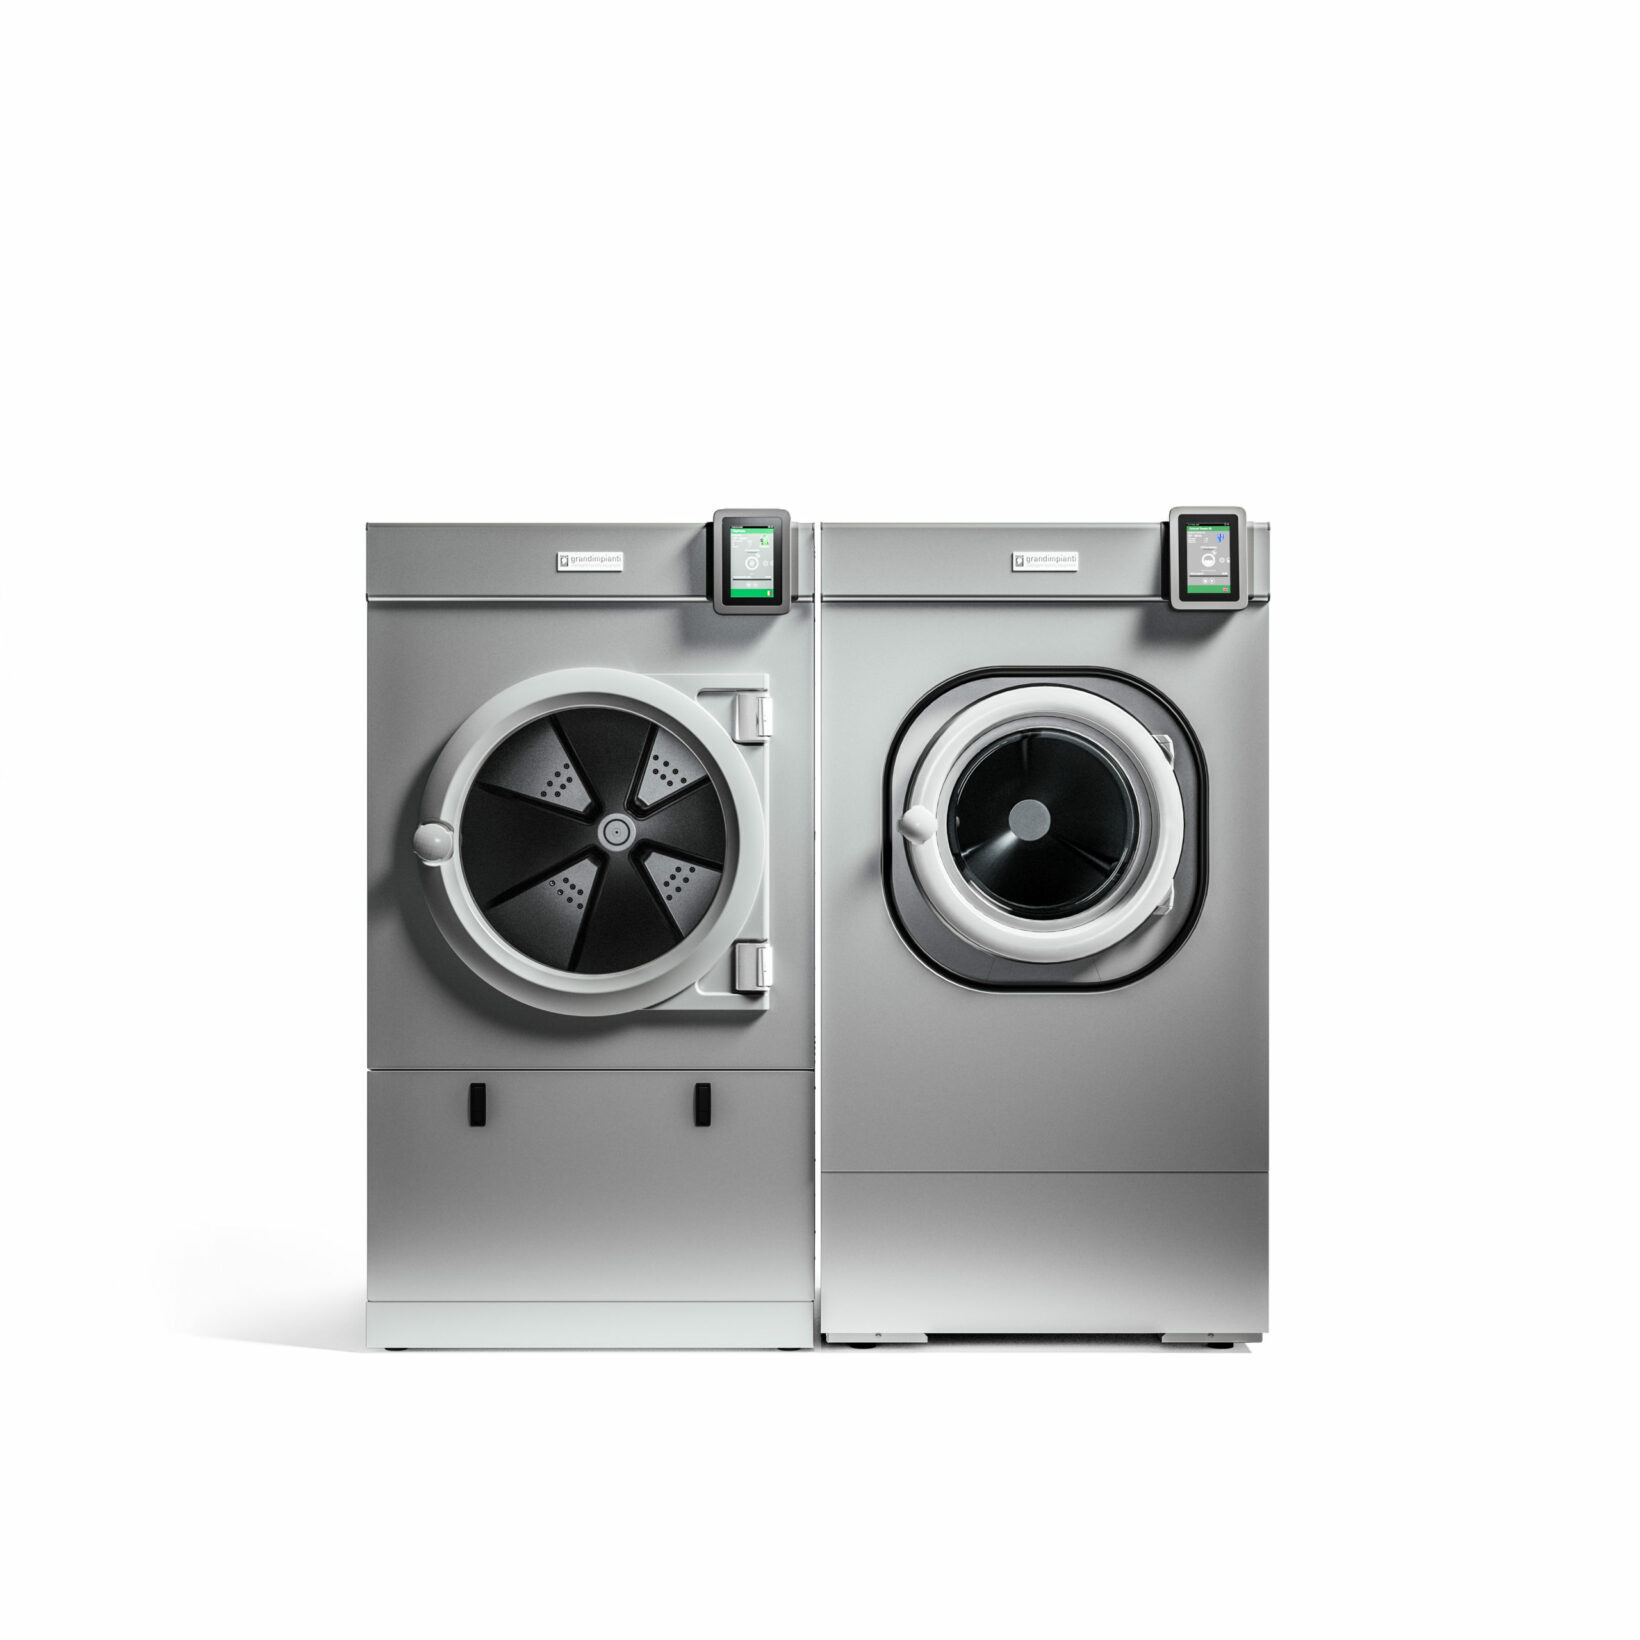 Tumble Dryers - Integrity Mechanical